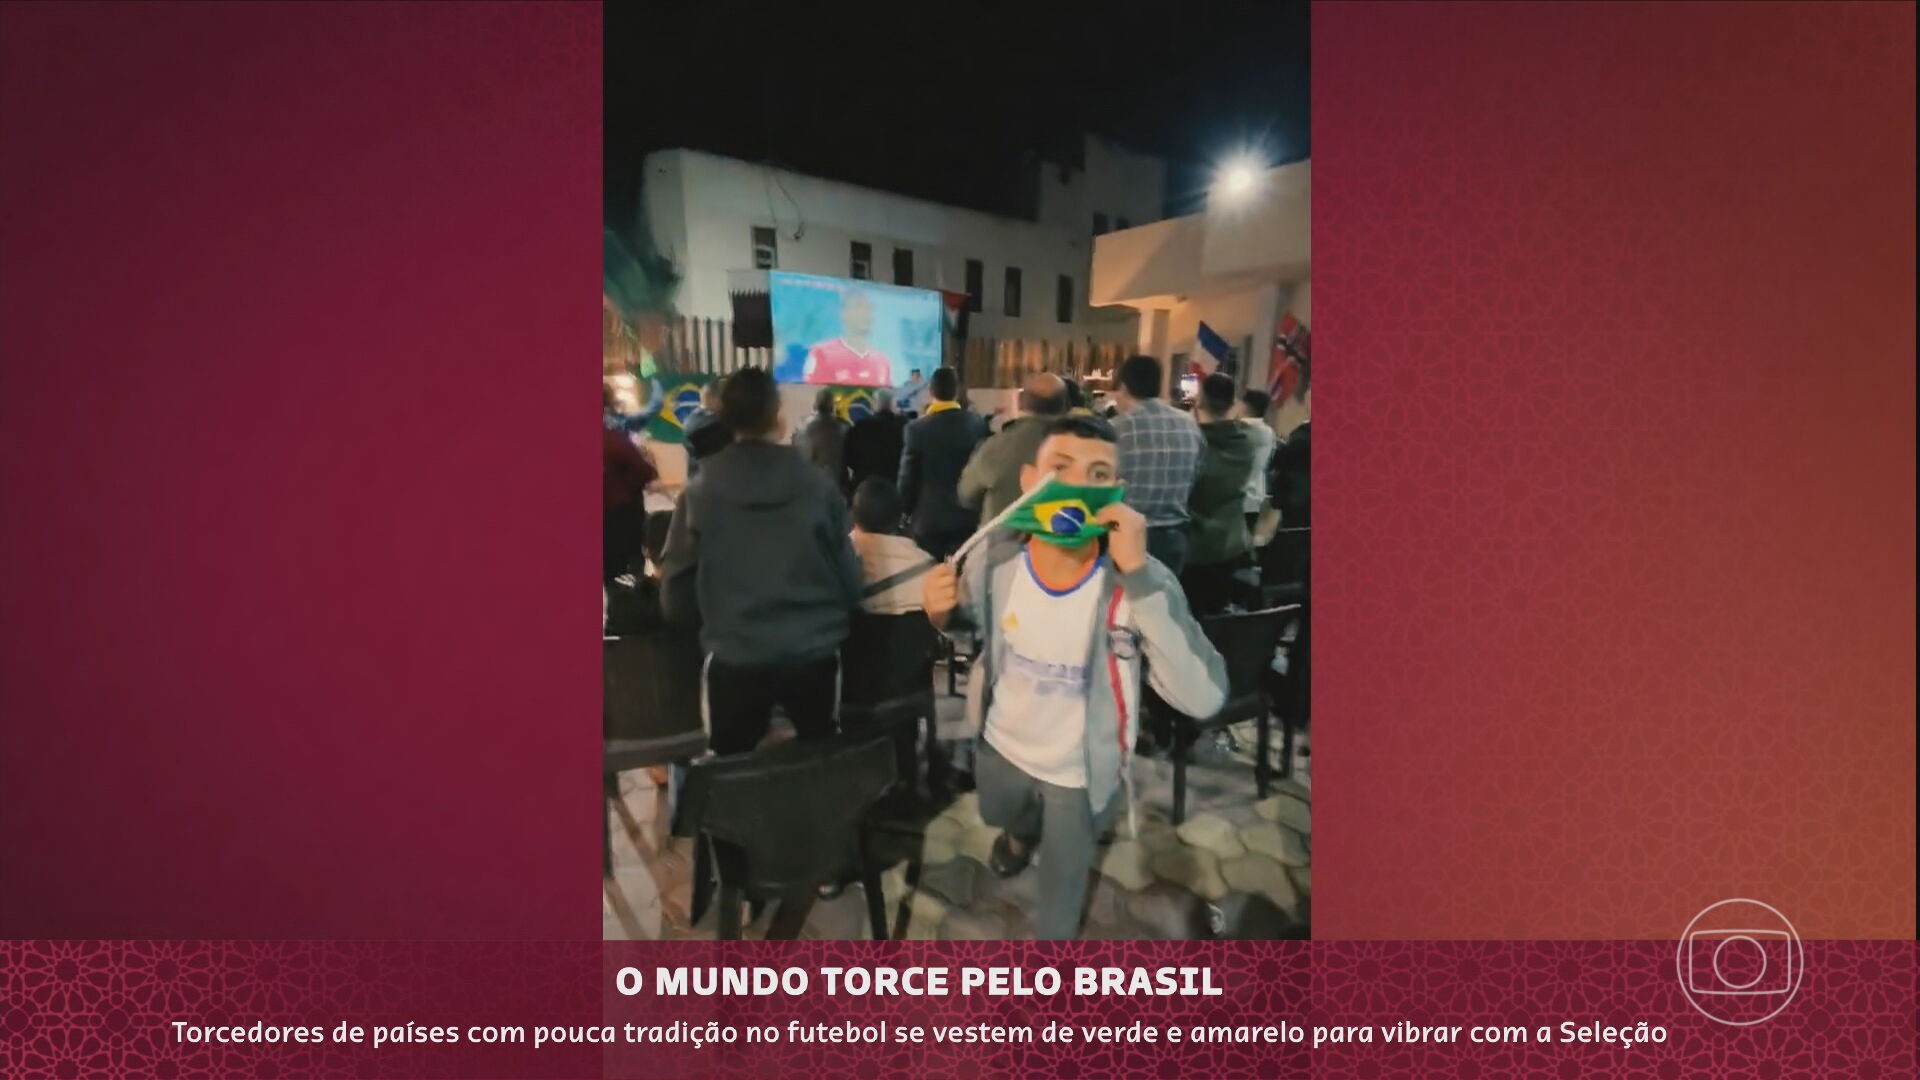 Torcedores de países com pouca tradição no futebol vibram com a Seleção brasileira